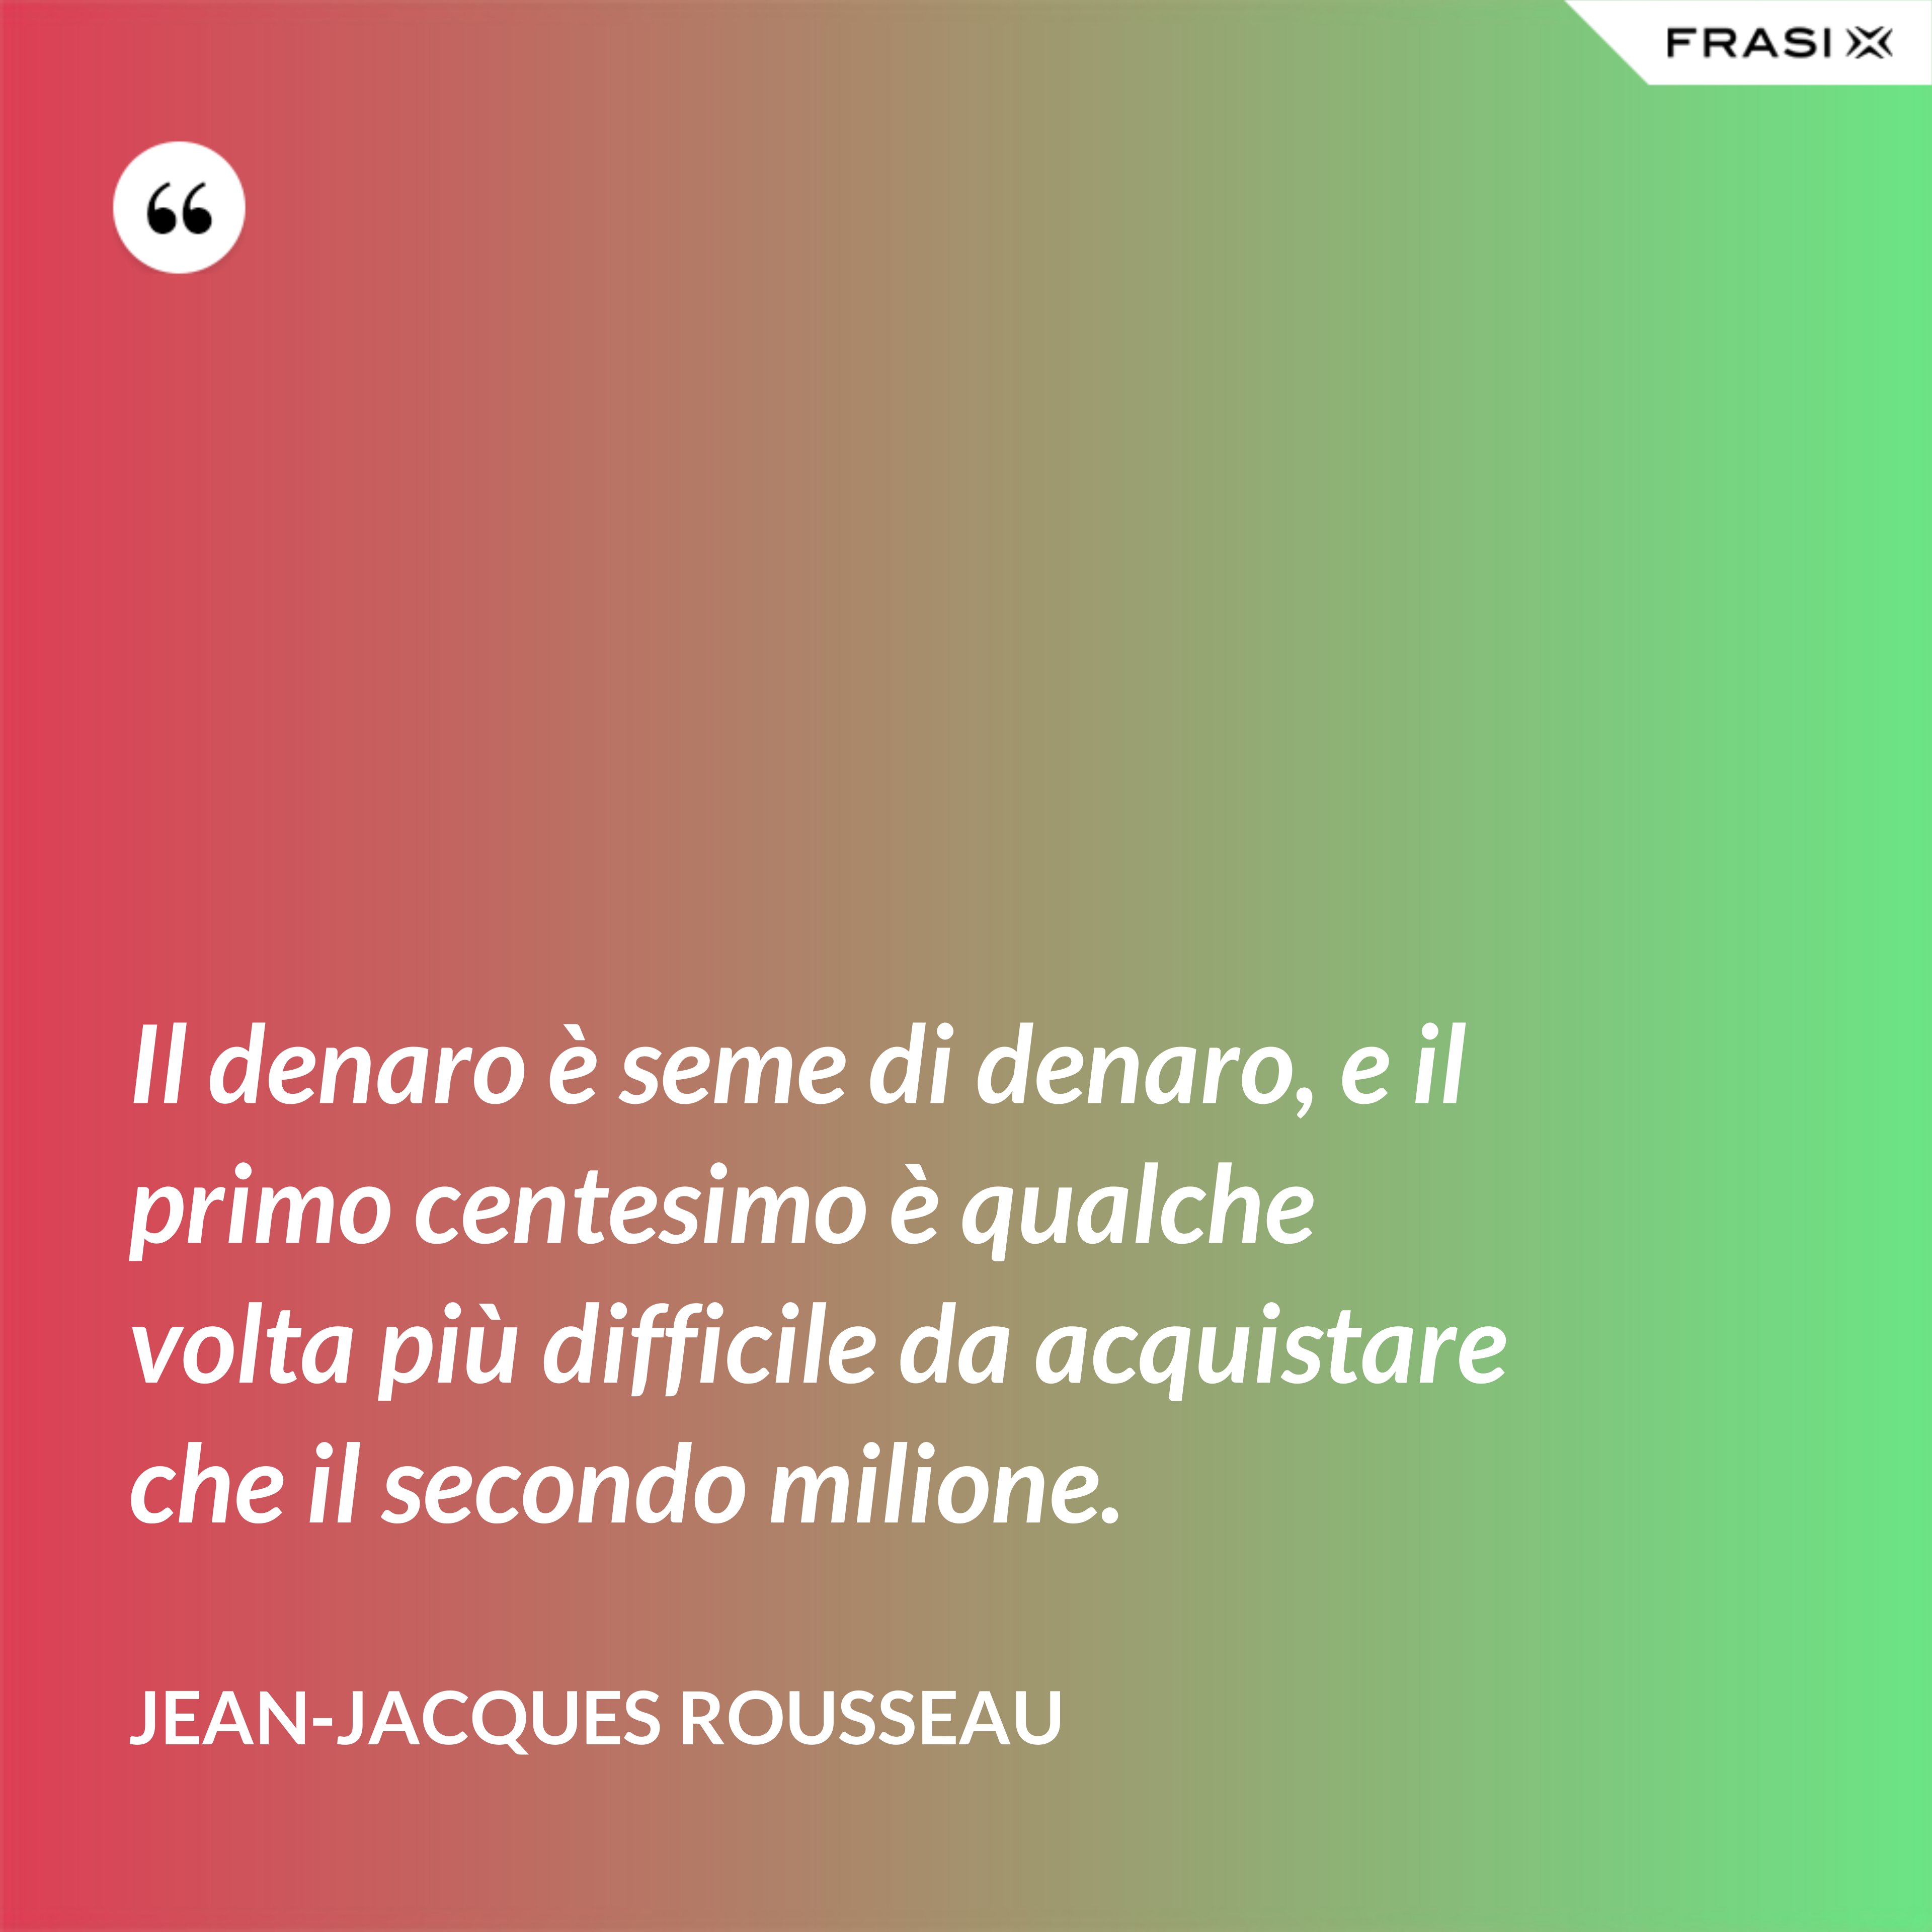 Il denaro è seme di denaro, e il primo centesimo è qualche volta più difficile da acquistare che il secondo milione. - Jean-Jacques Rousseau